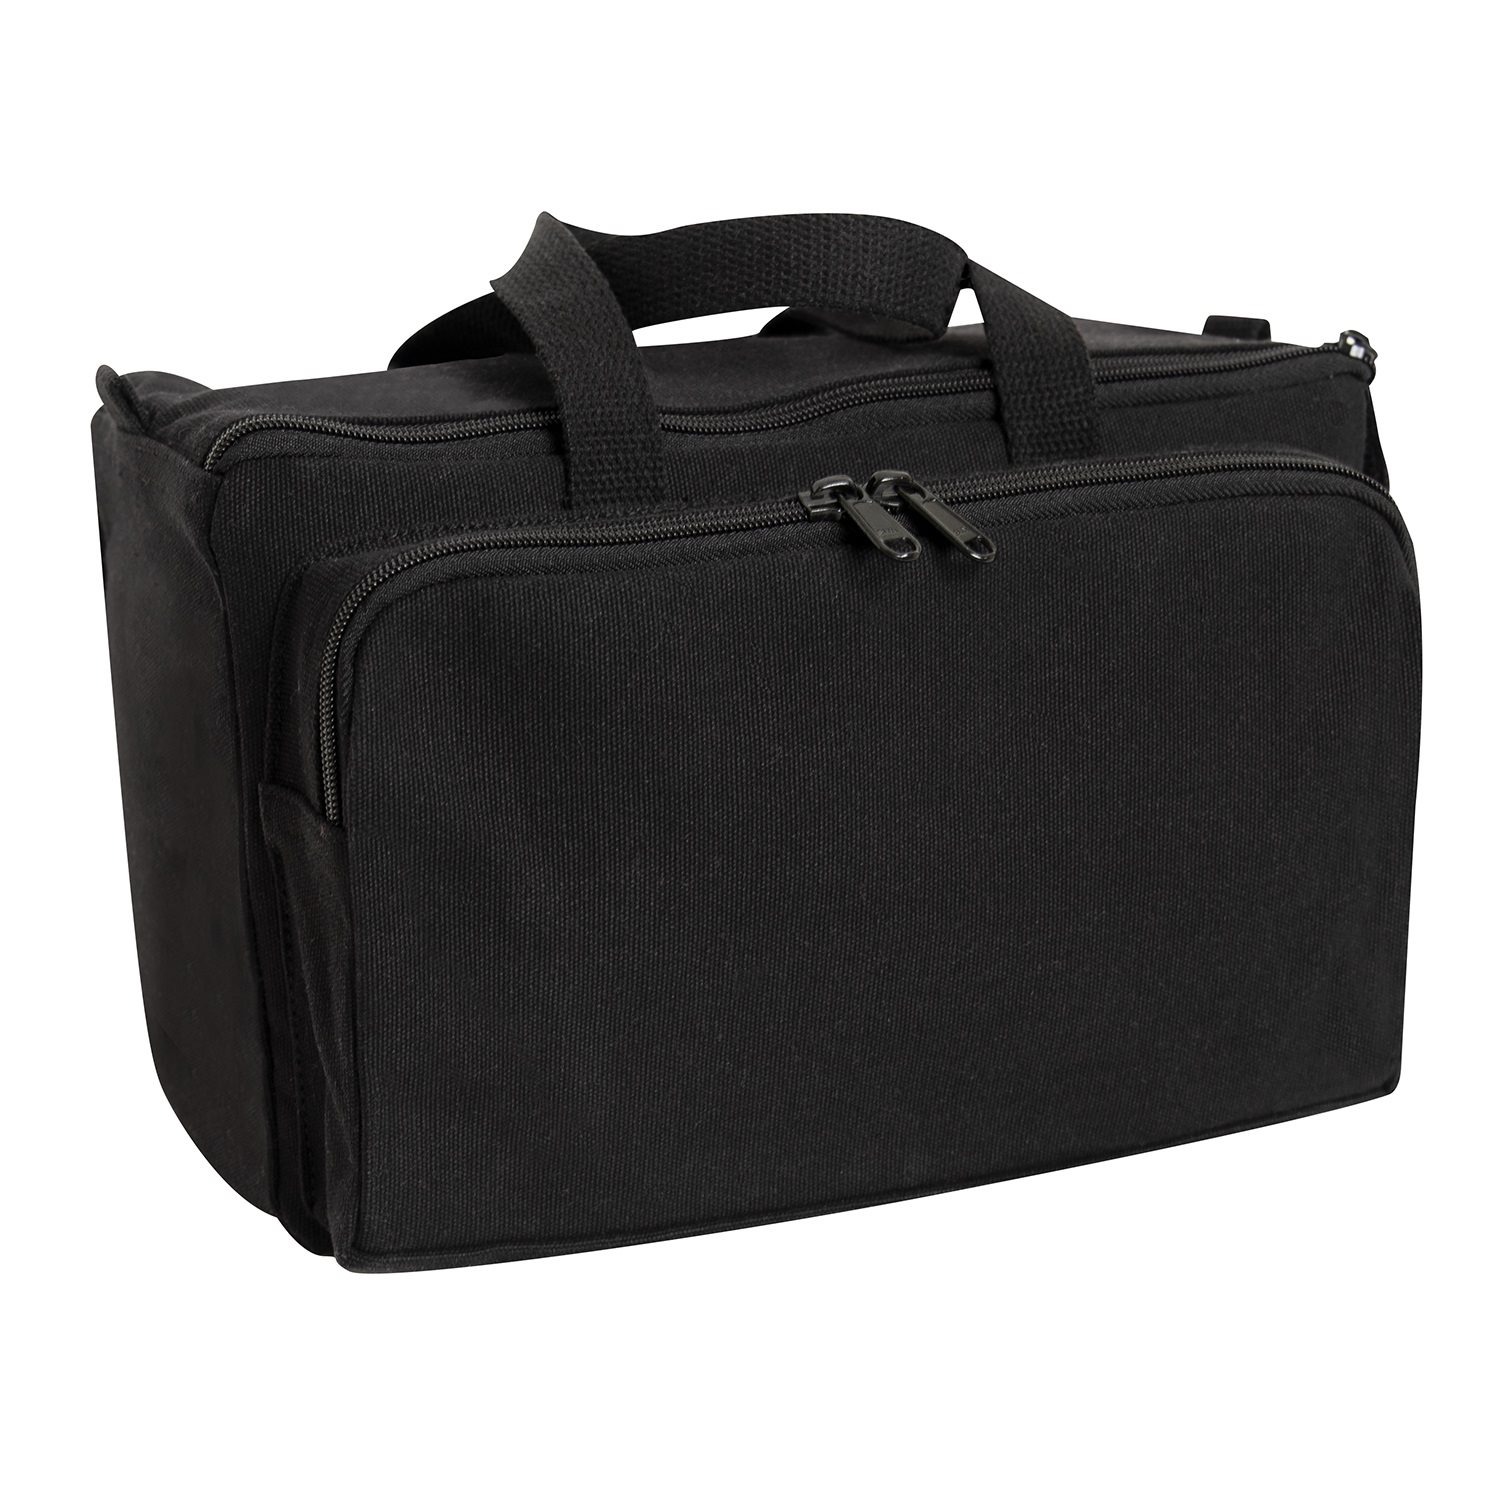 Black Tactical Range Bag, Go Bag, CCW Bag, 2849